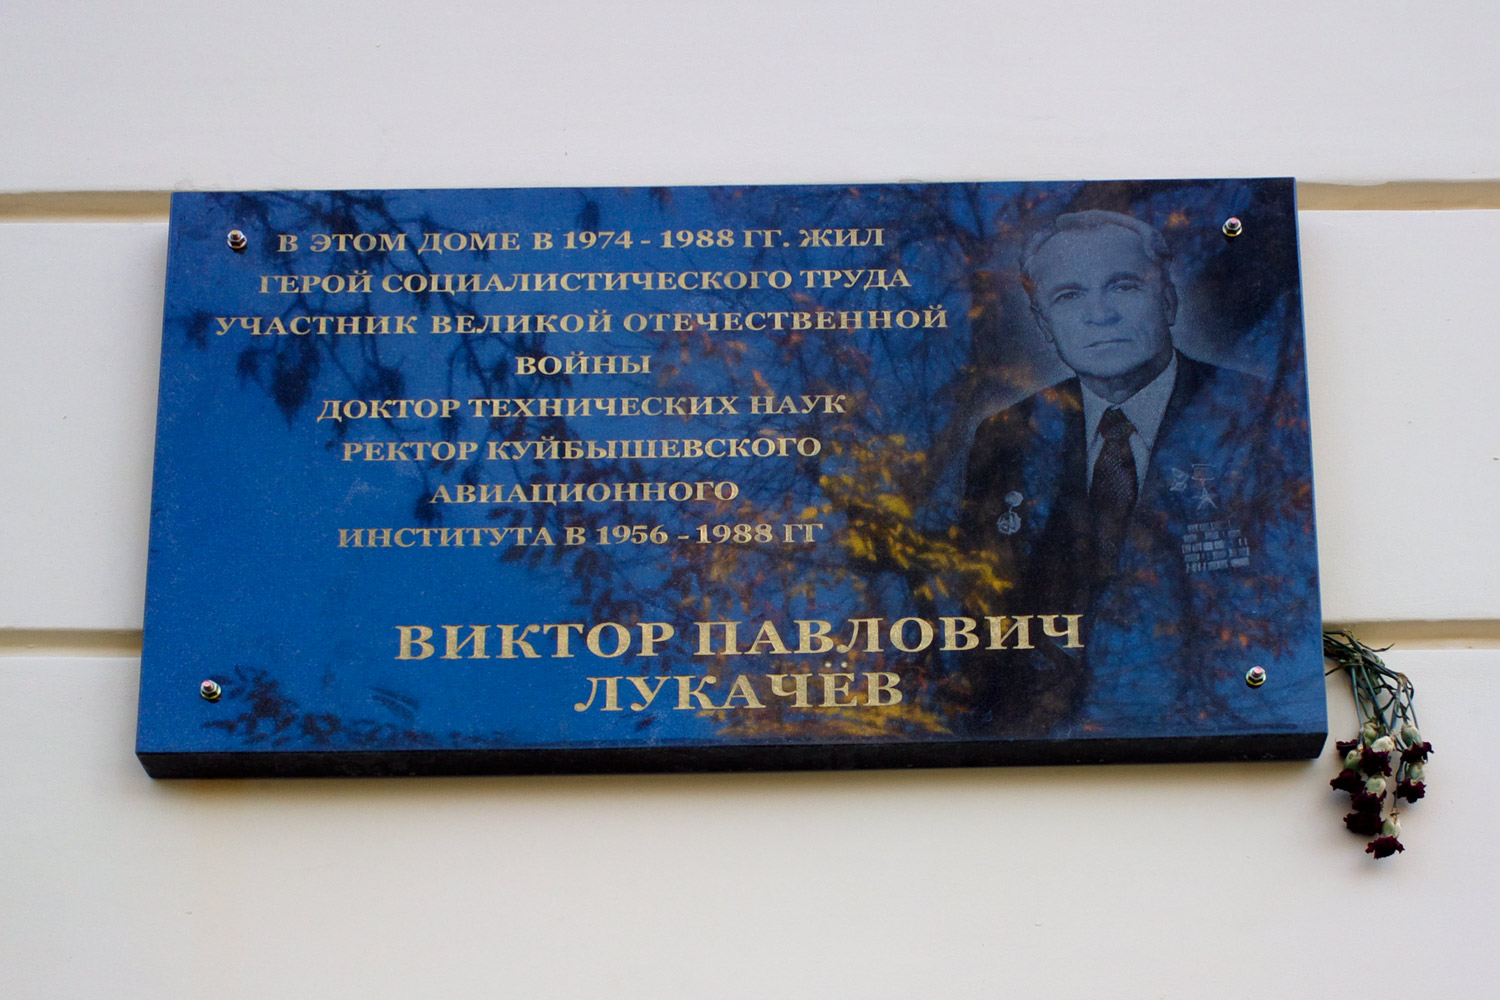 Samara, Волжский проспект, 37. Samara — Memorial plaques